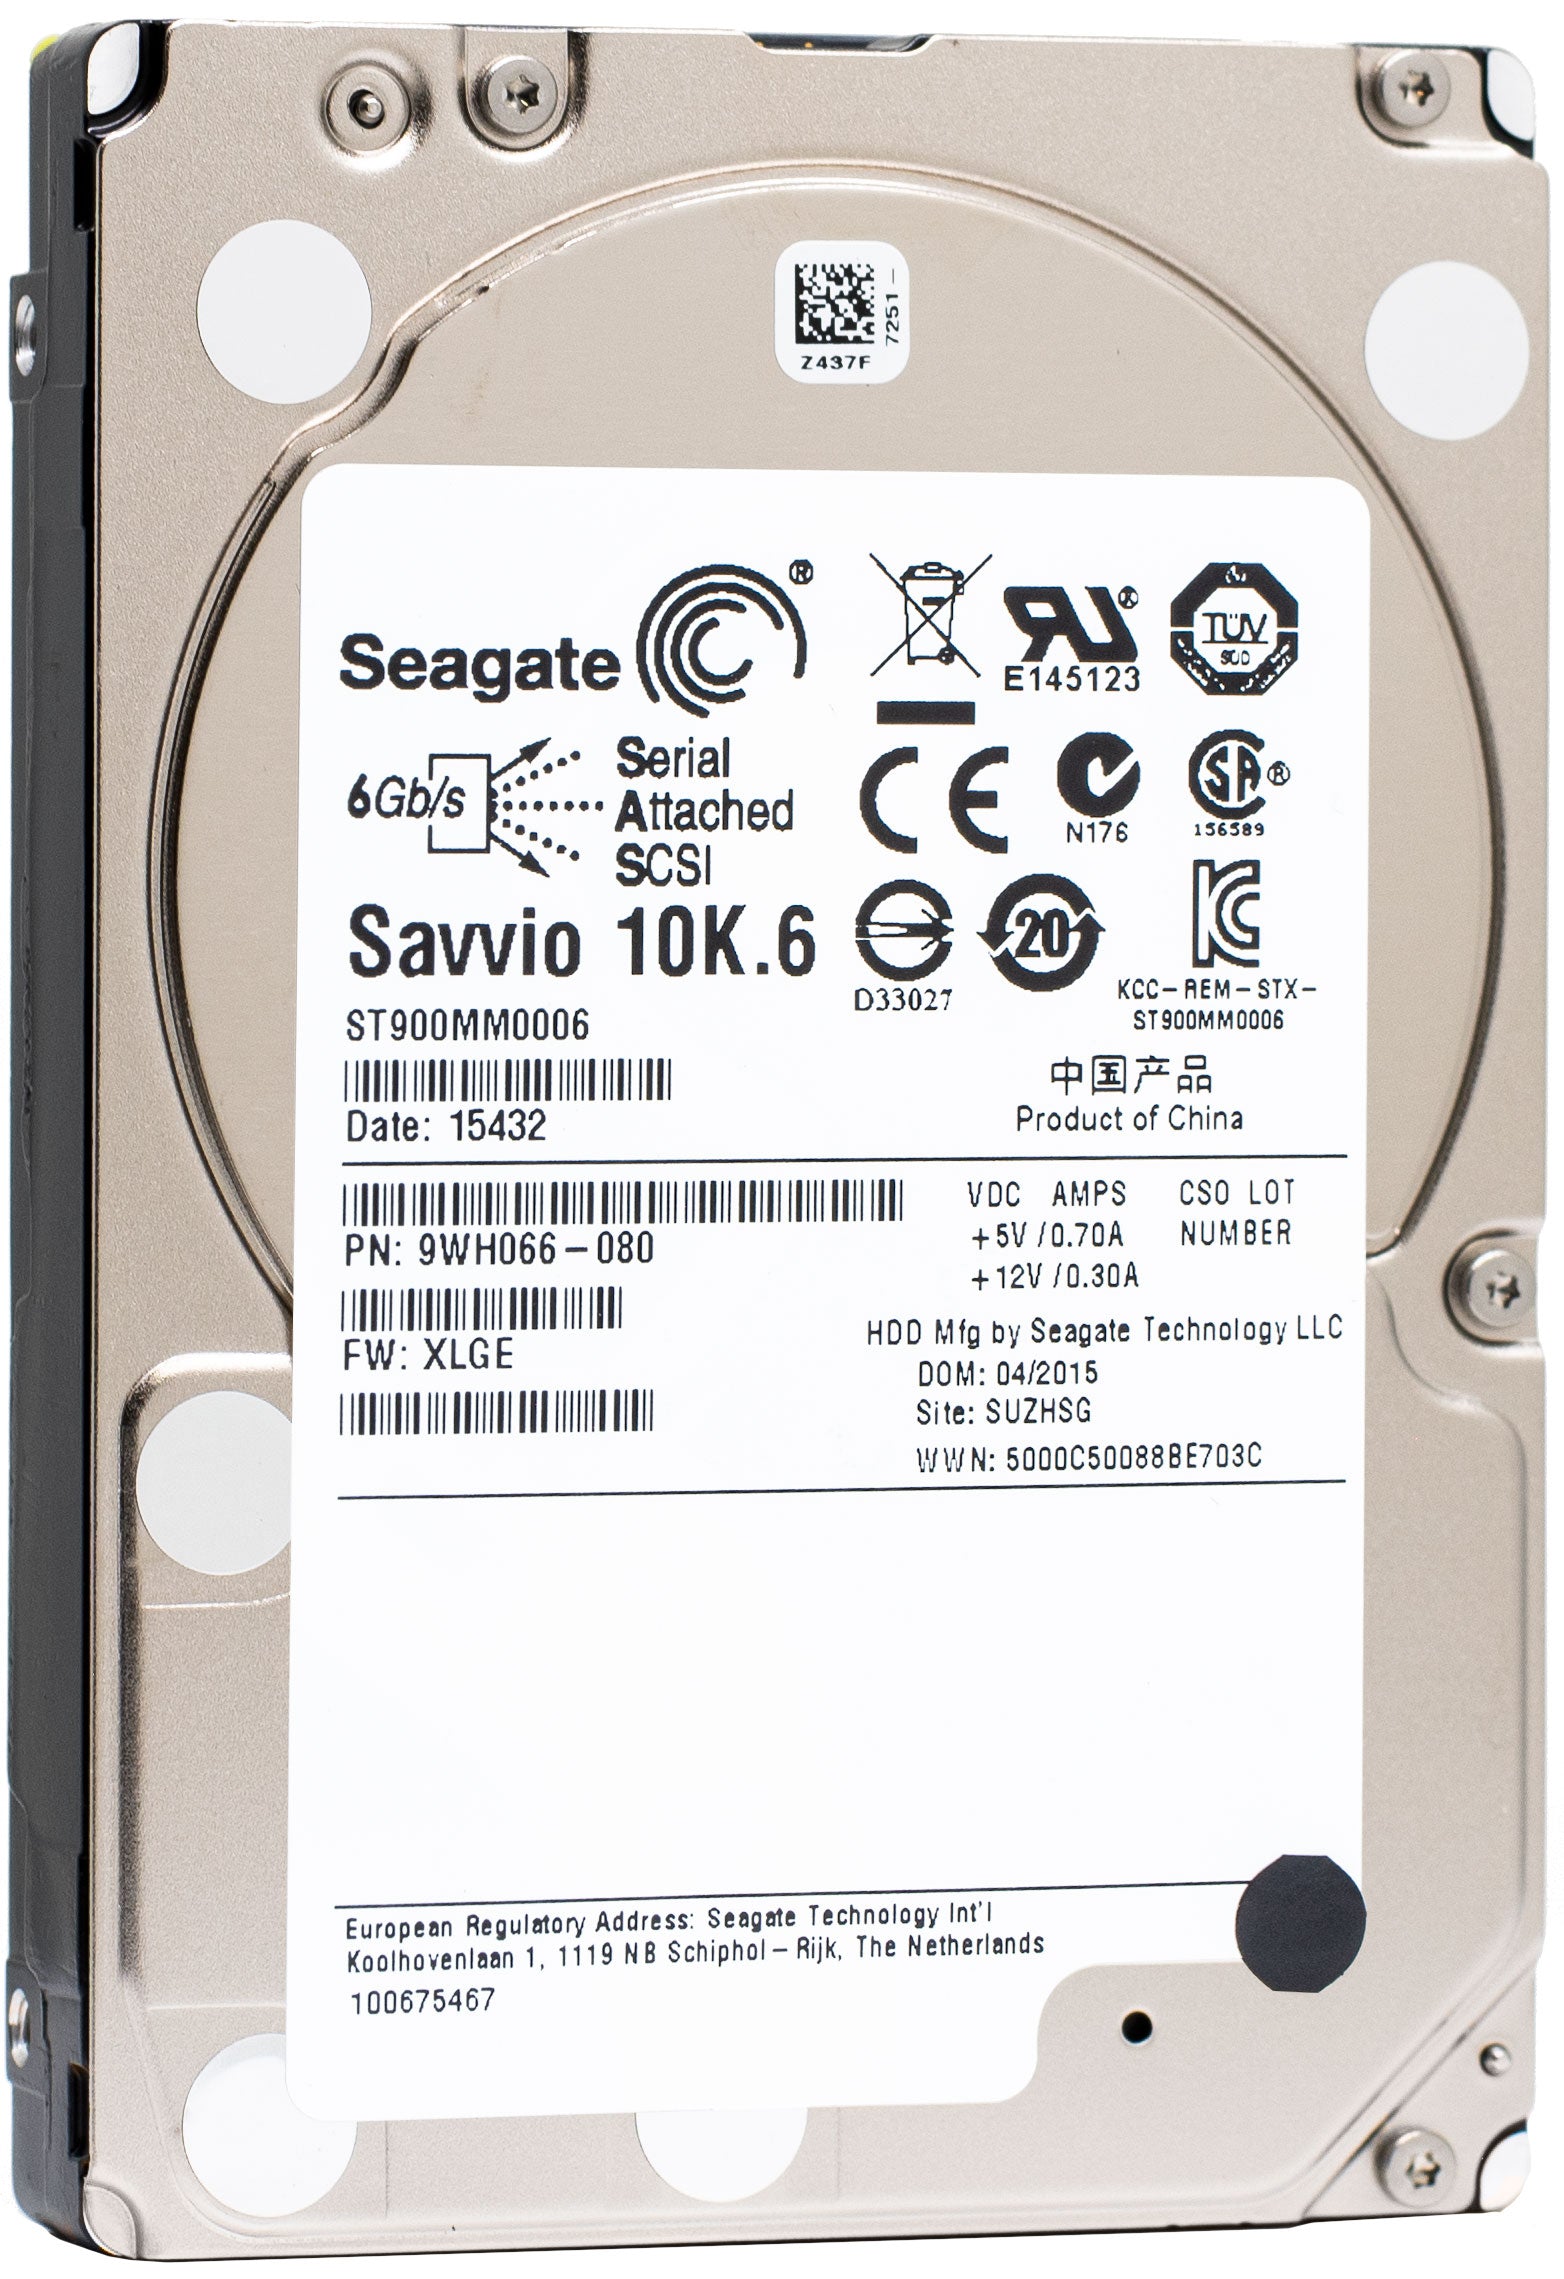 Seagate Savvio 10K.6 ST900MM0006 900GB 10K RPM SAS 6Gb/s 64MB 2.5" HDD